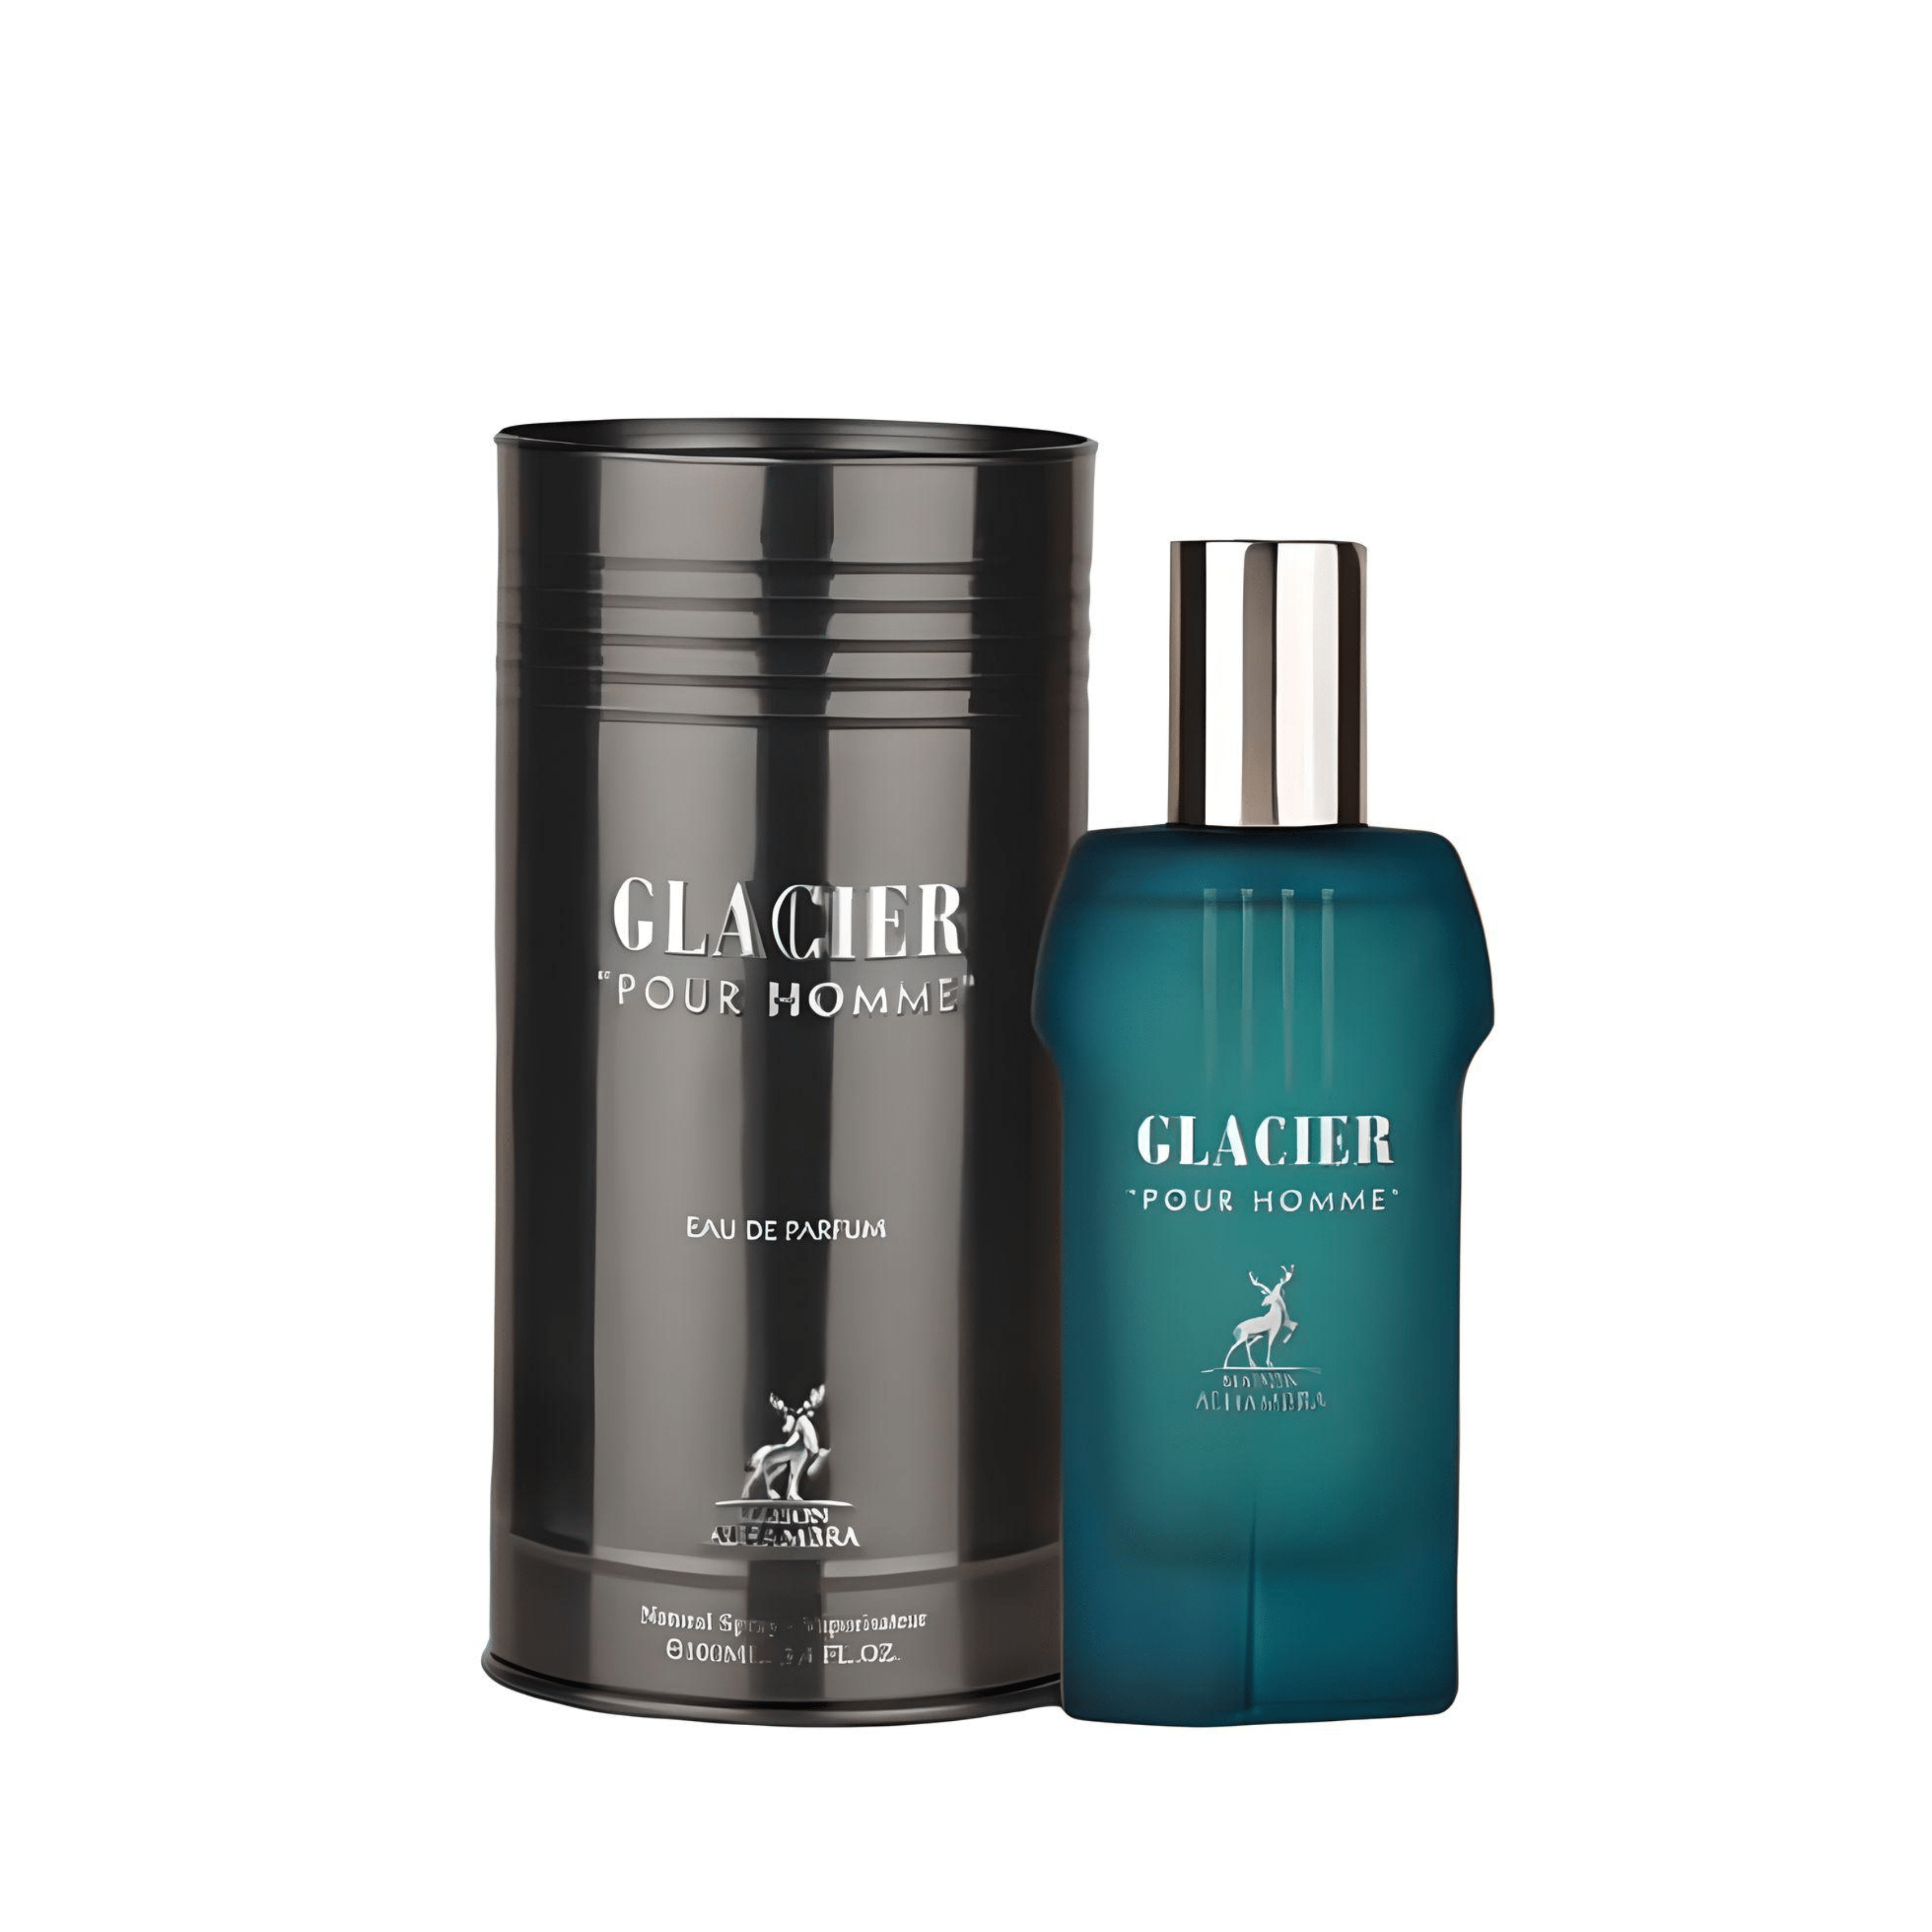 Glacier Pour Homme Perfume / Eau De Parfum By Maison Alhambra / Lattafa (Inspired By Le Male - Jpg)